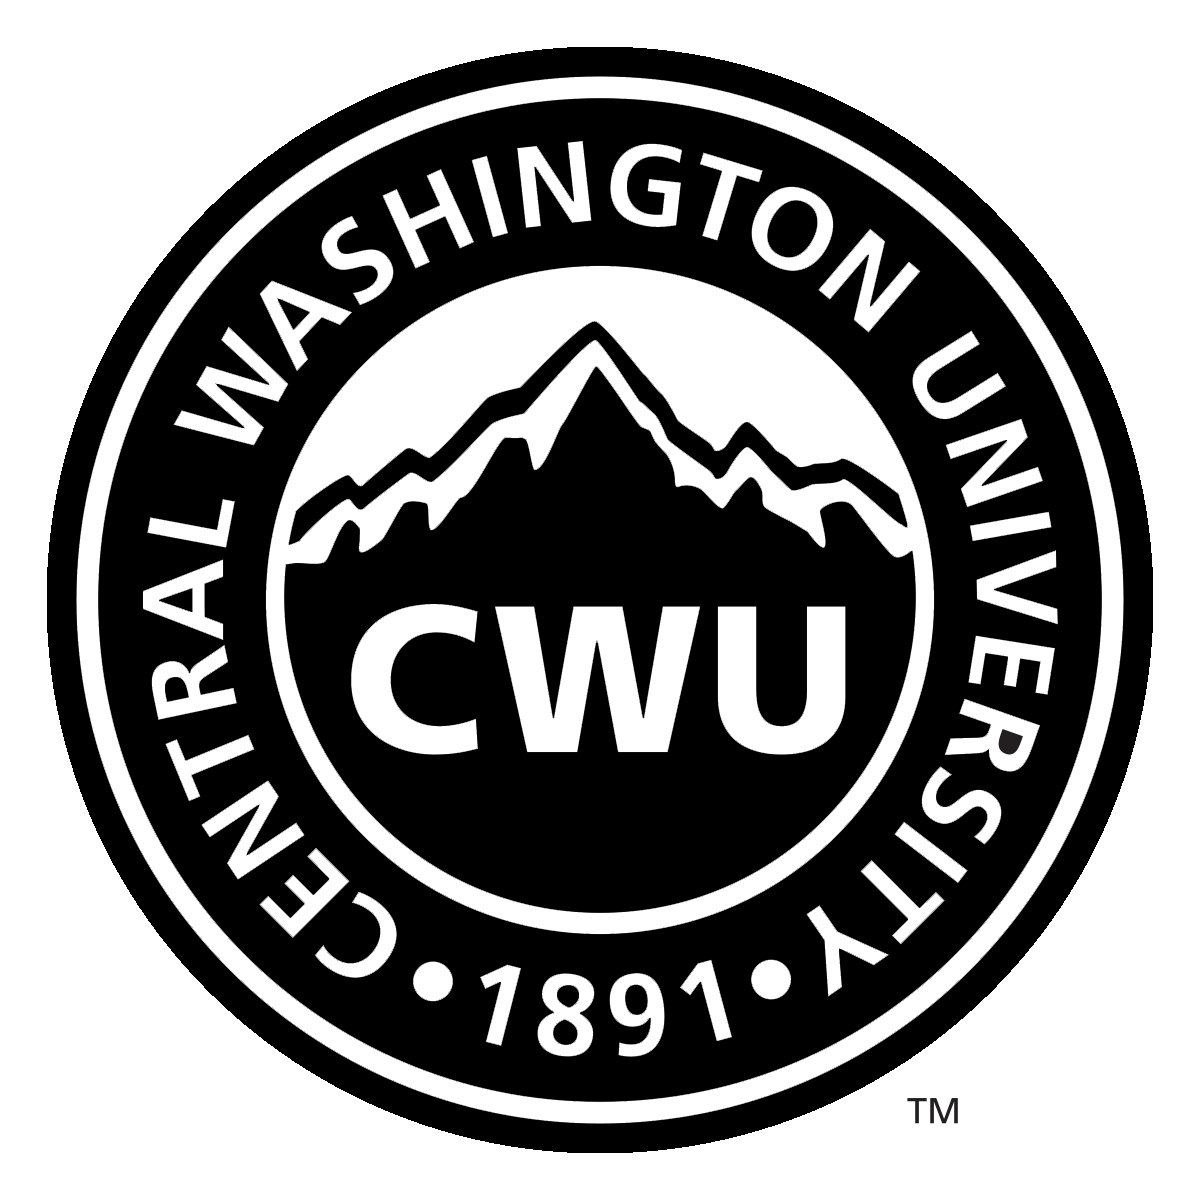 Central Washington University